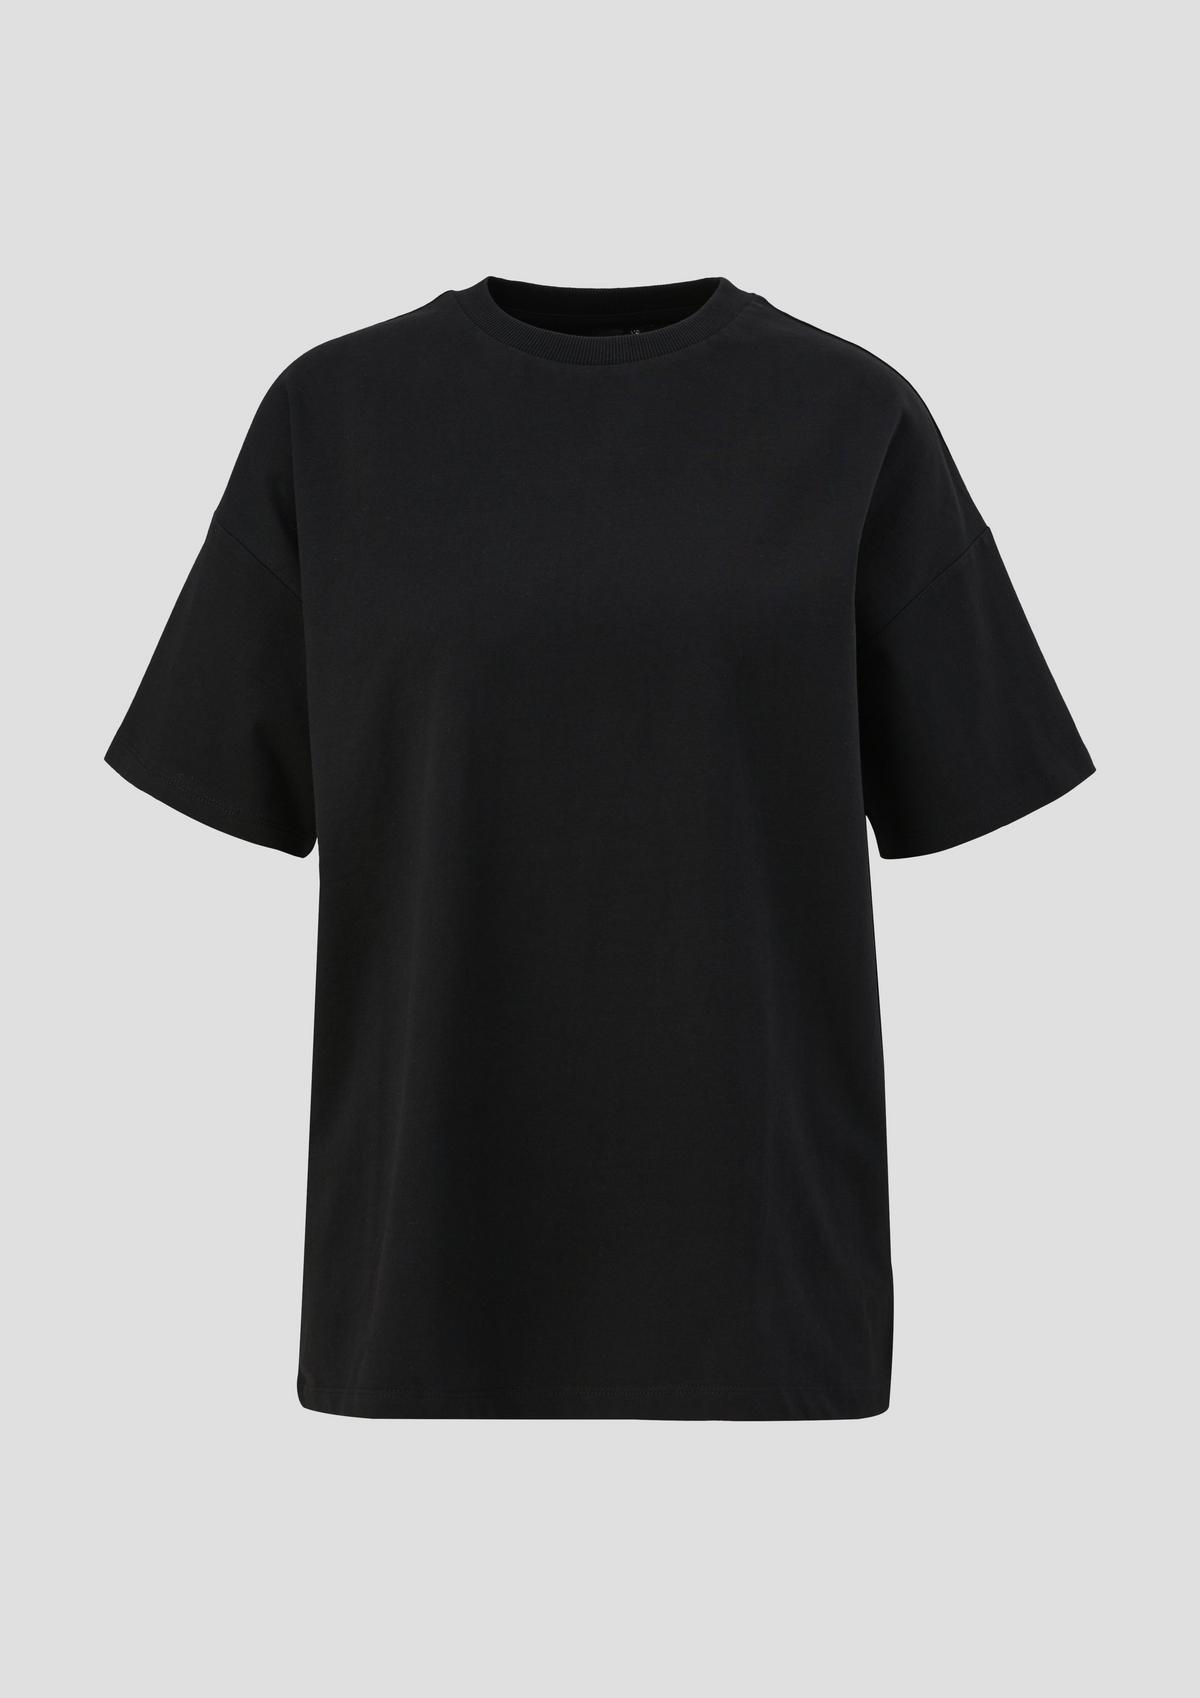 Baumwoll-Shirt mit Rückenprint | ELIF x schwarz - QS